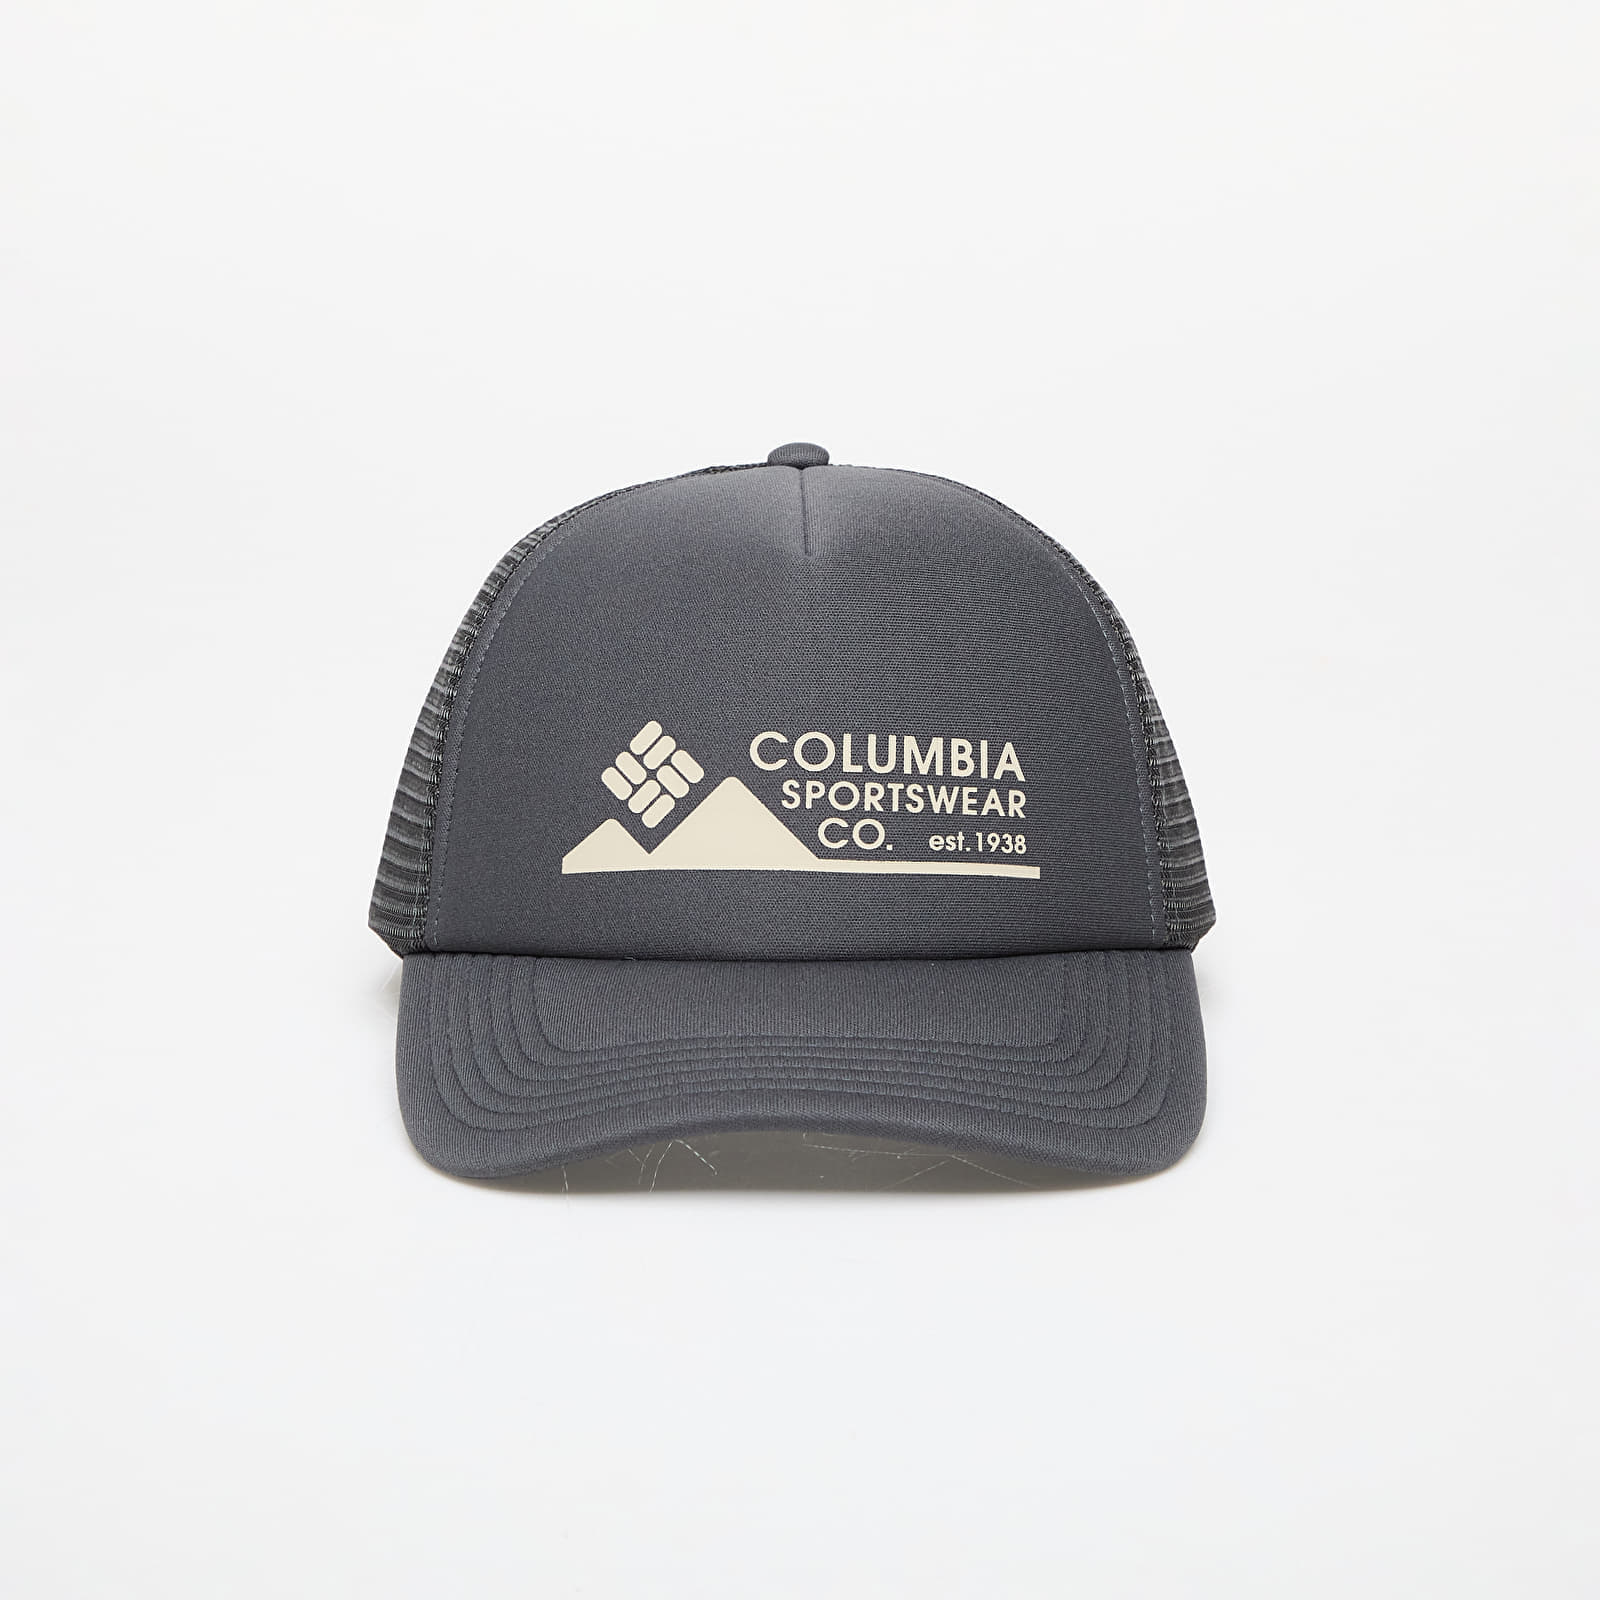 Columbia Camp Break™ Foam Trucker Cap Shark/ Columbia